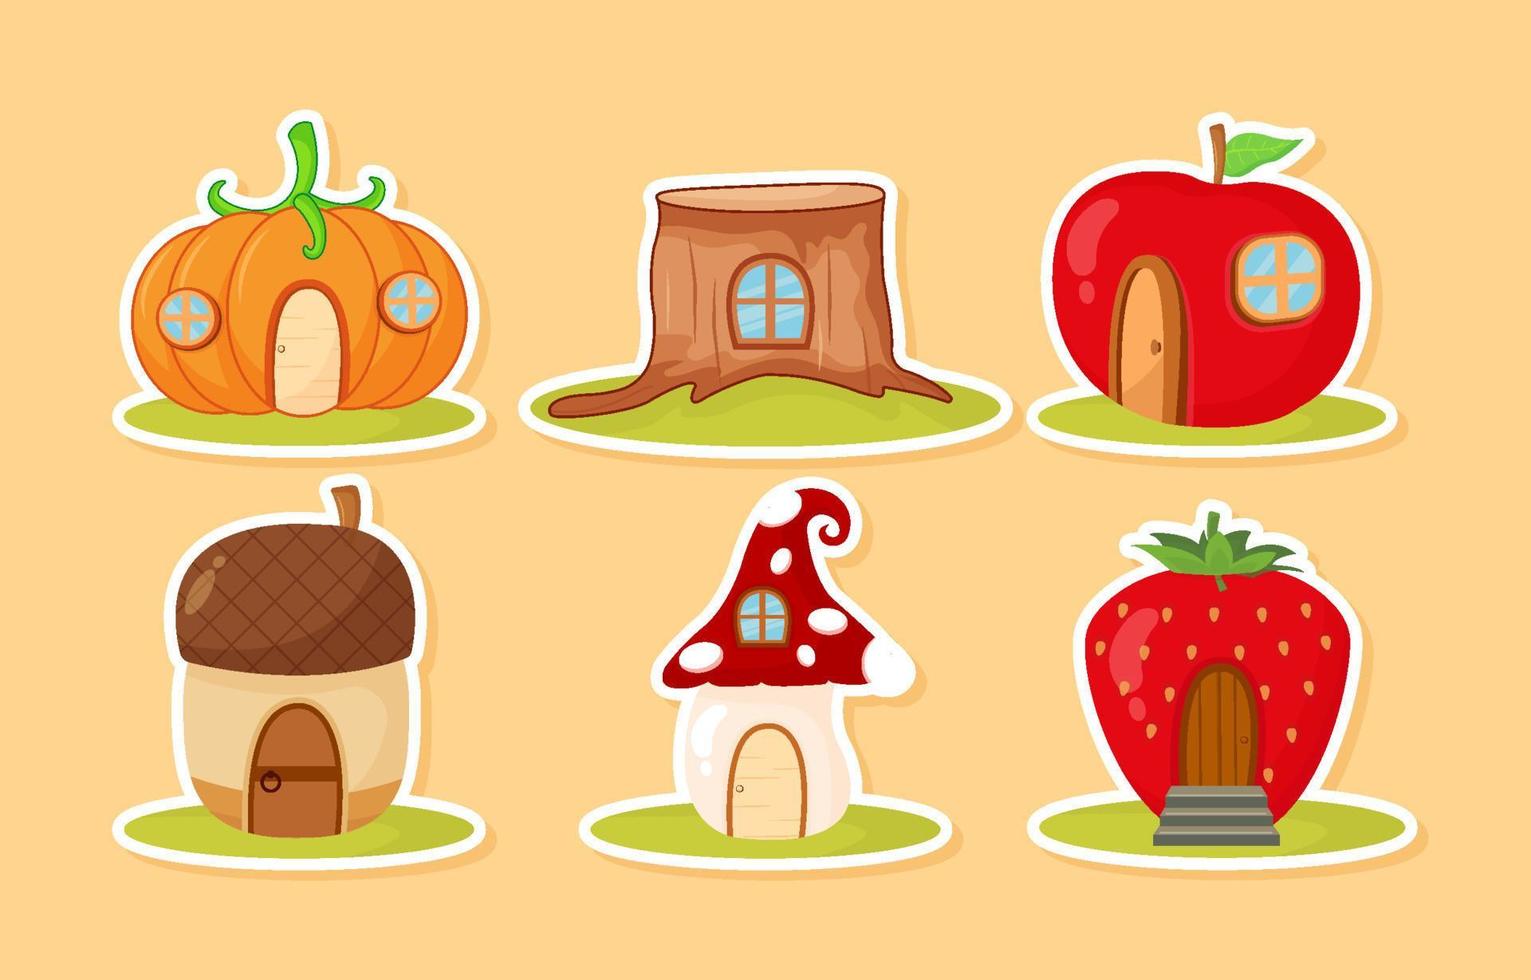 Cute Fantasy House Sticker Set Collection Design vector